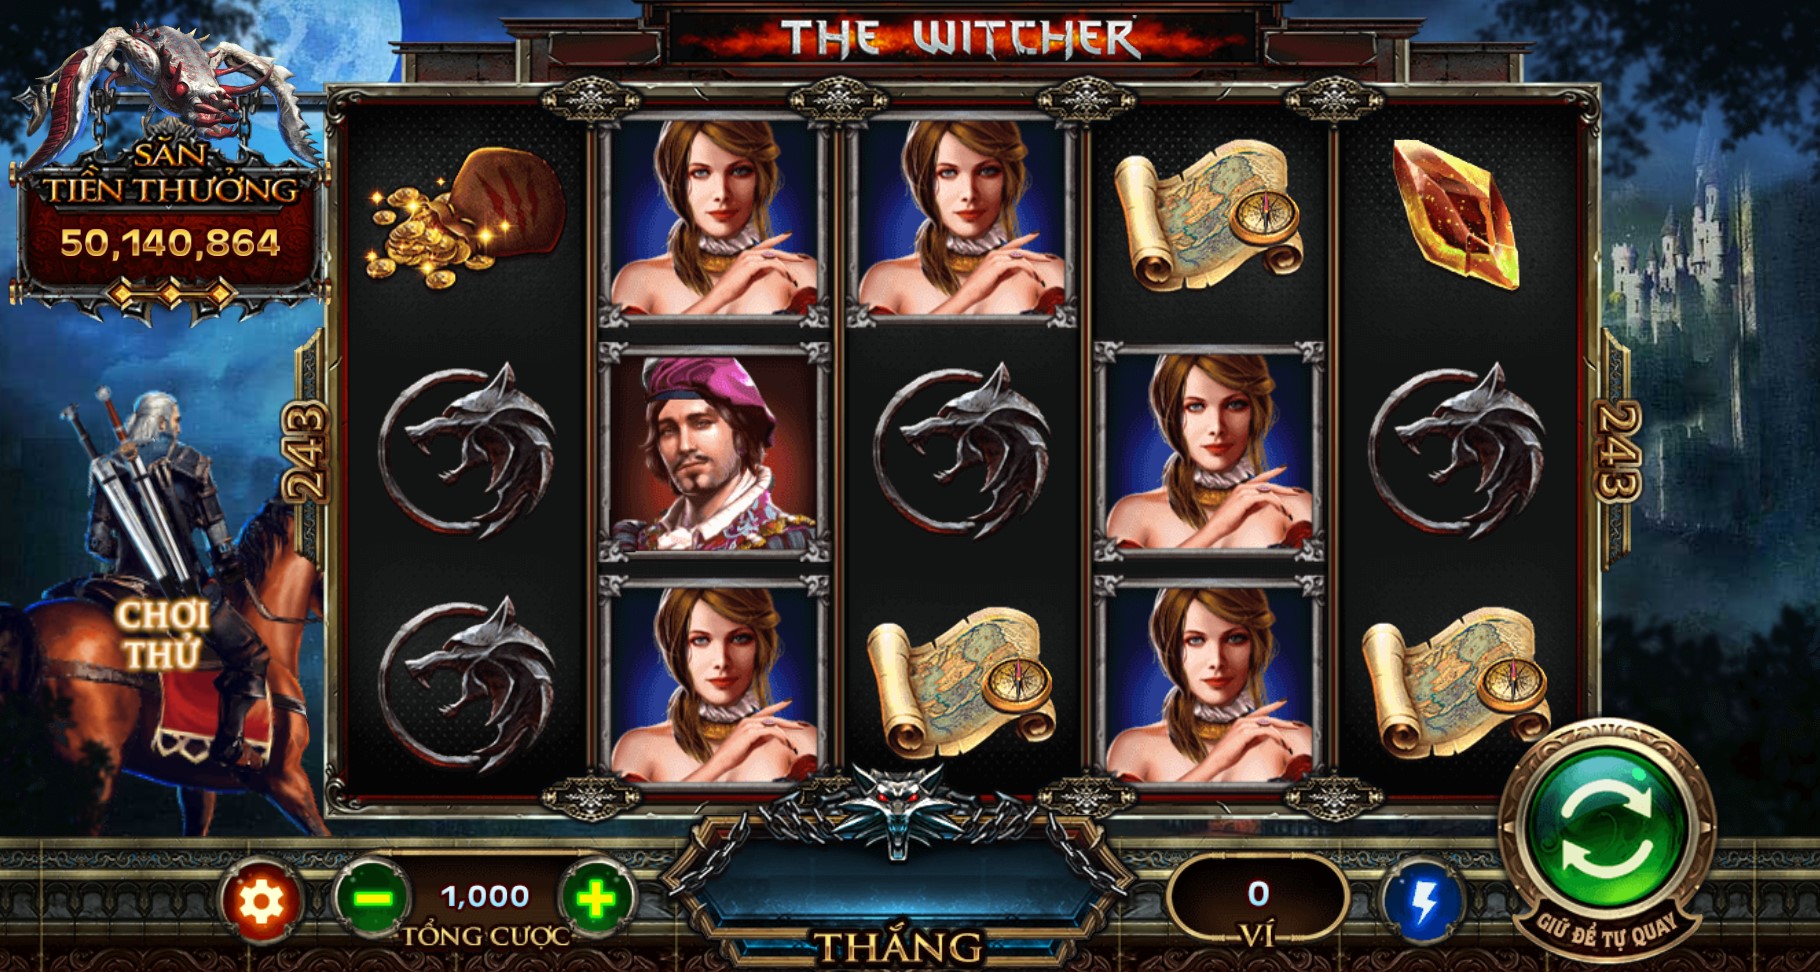 Săn tiền thưởng trong game nổ hũ The Witcher